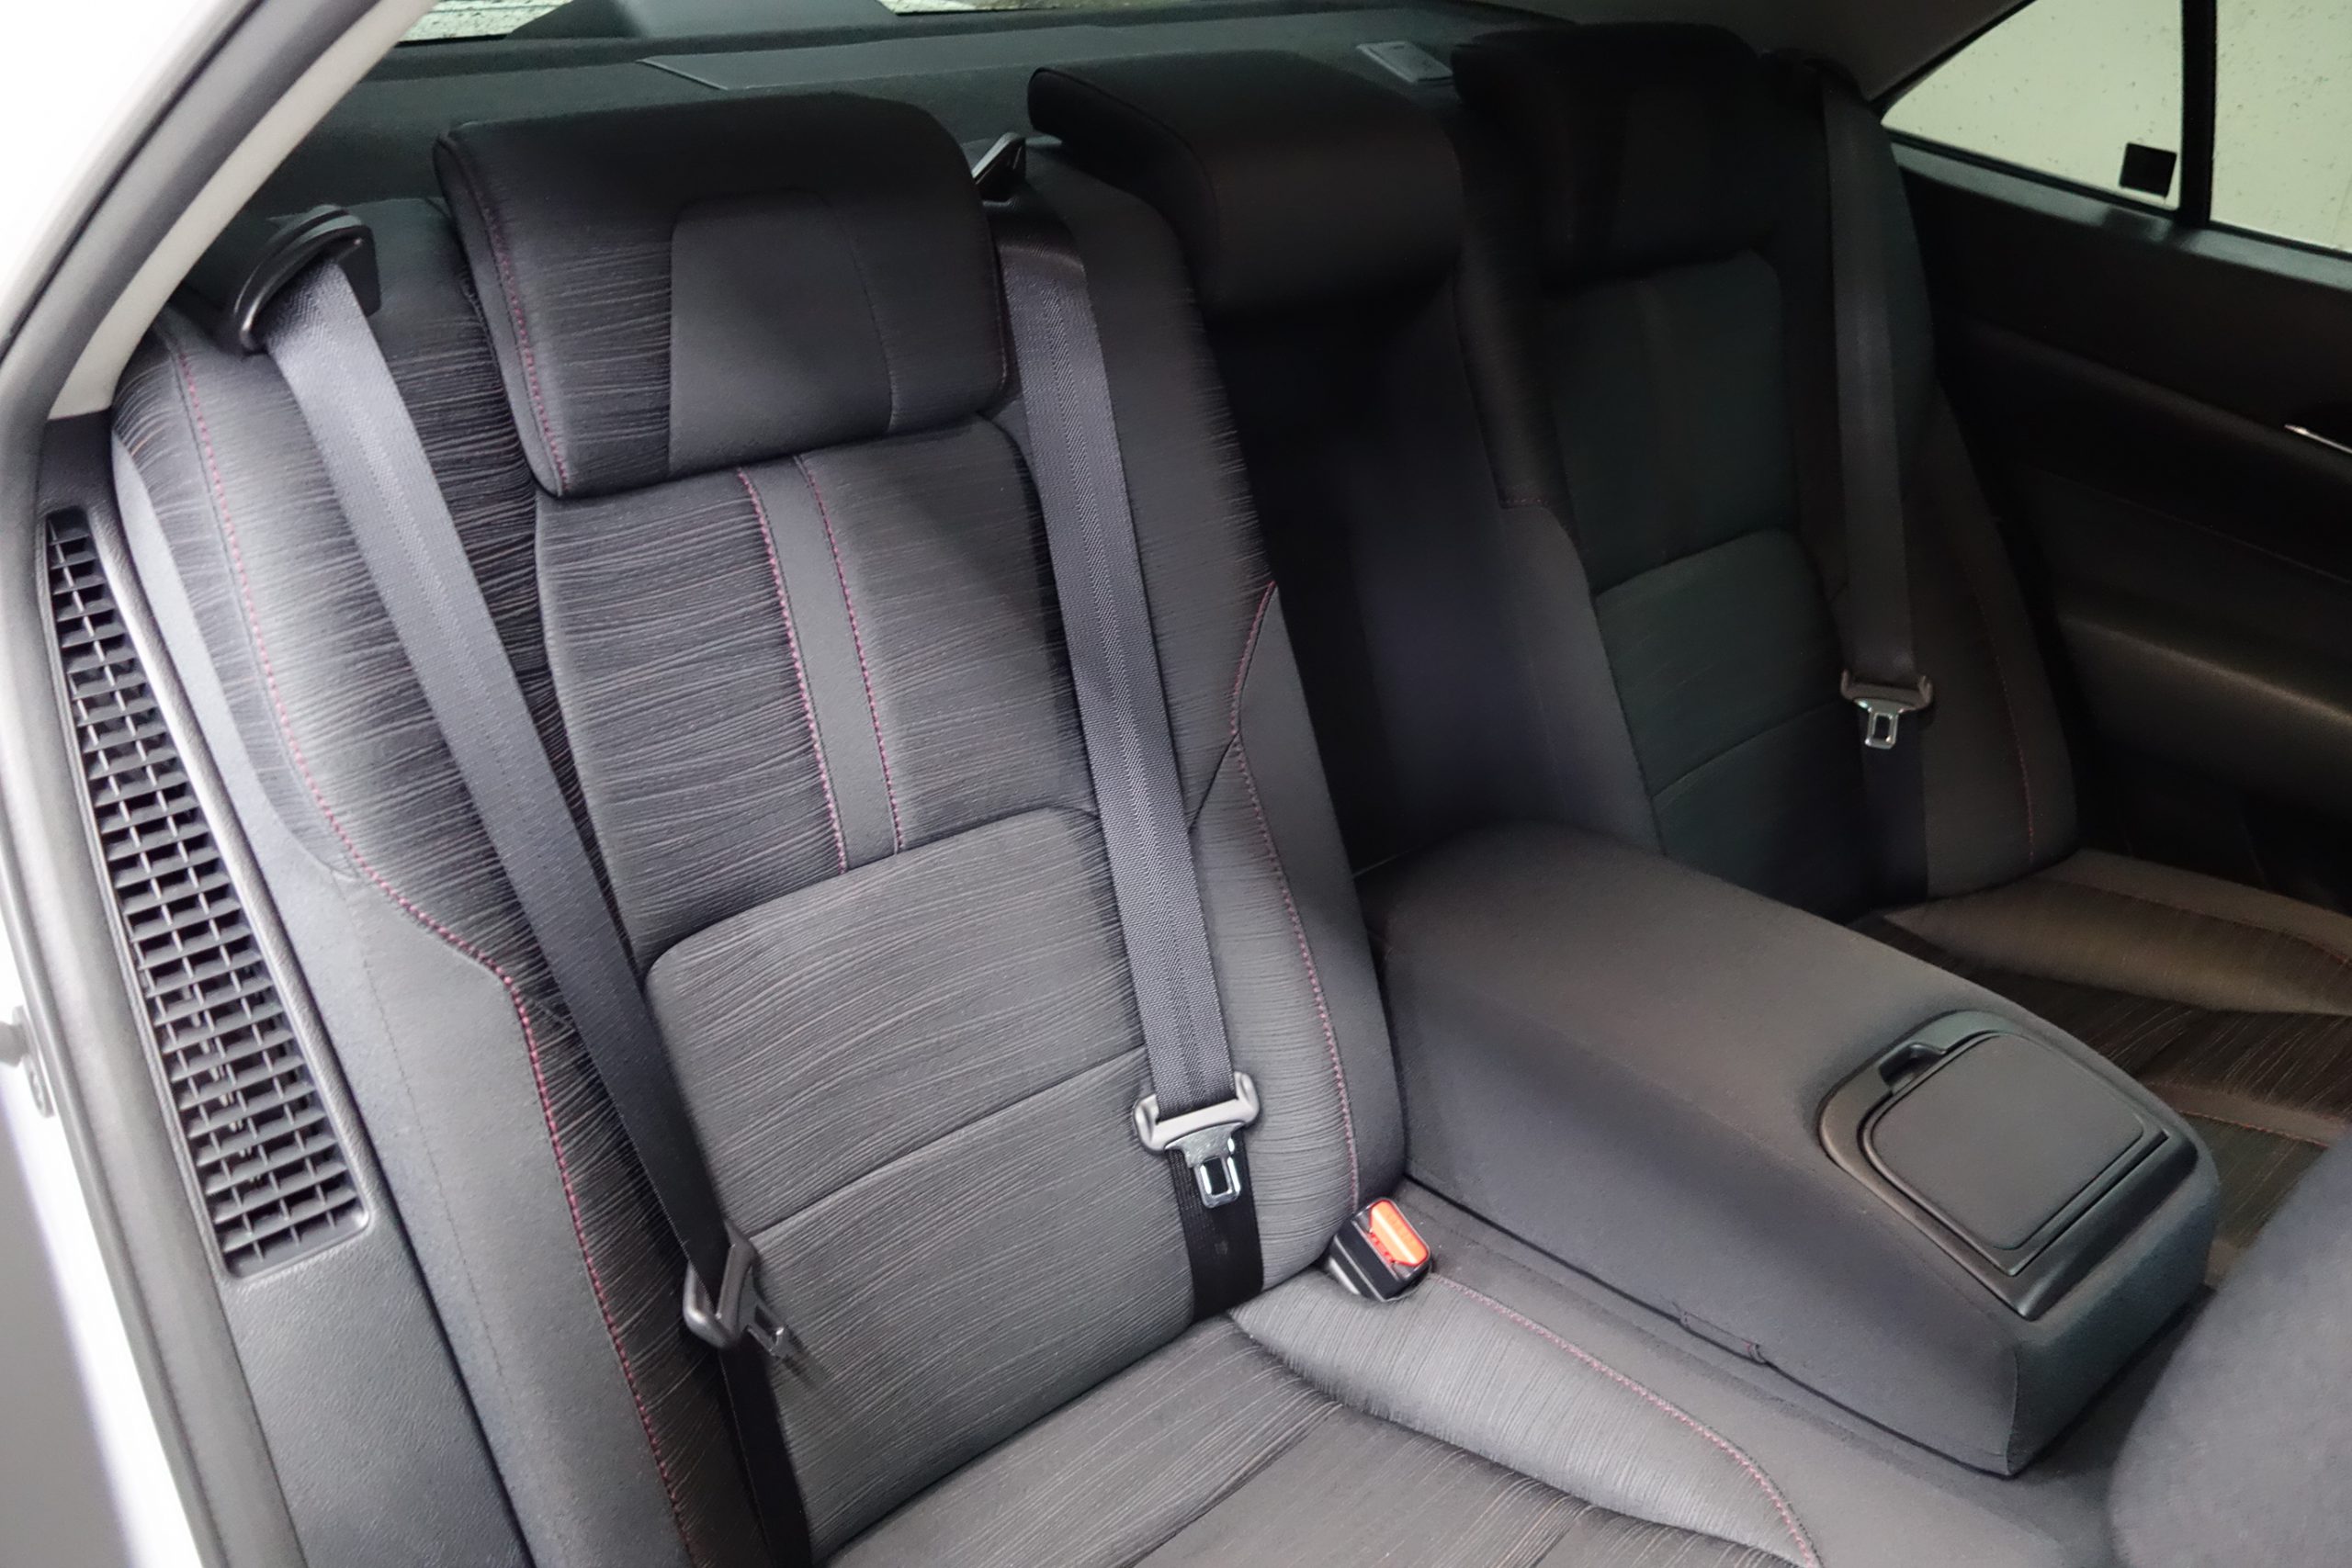 210系クラウンアスリートへレザーシートカバー装着 装着するだけで車内の高級感は一気にアップ B Pacs Staff Blog